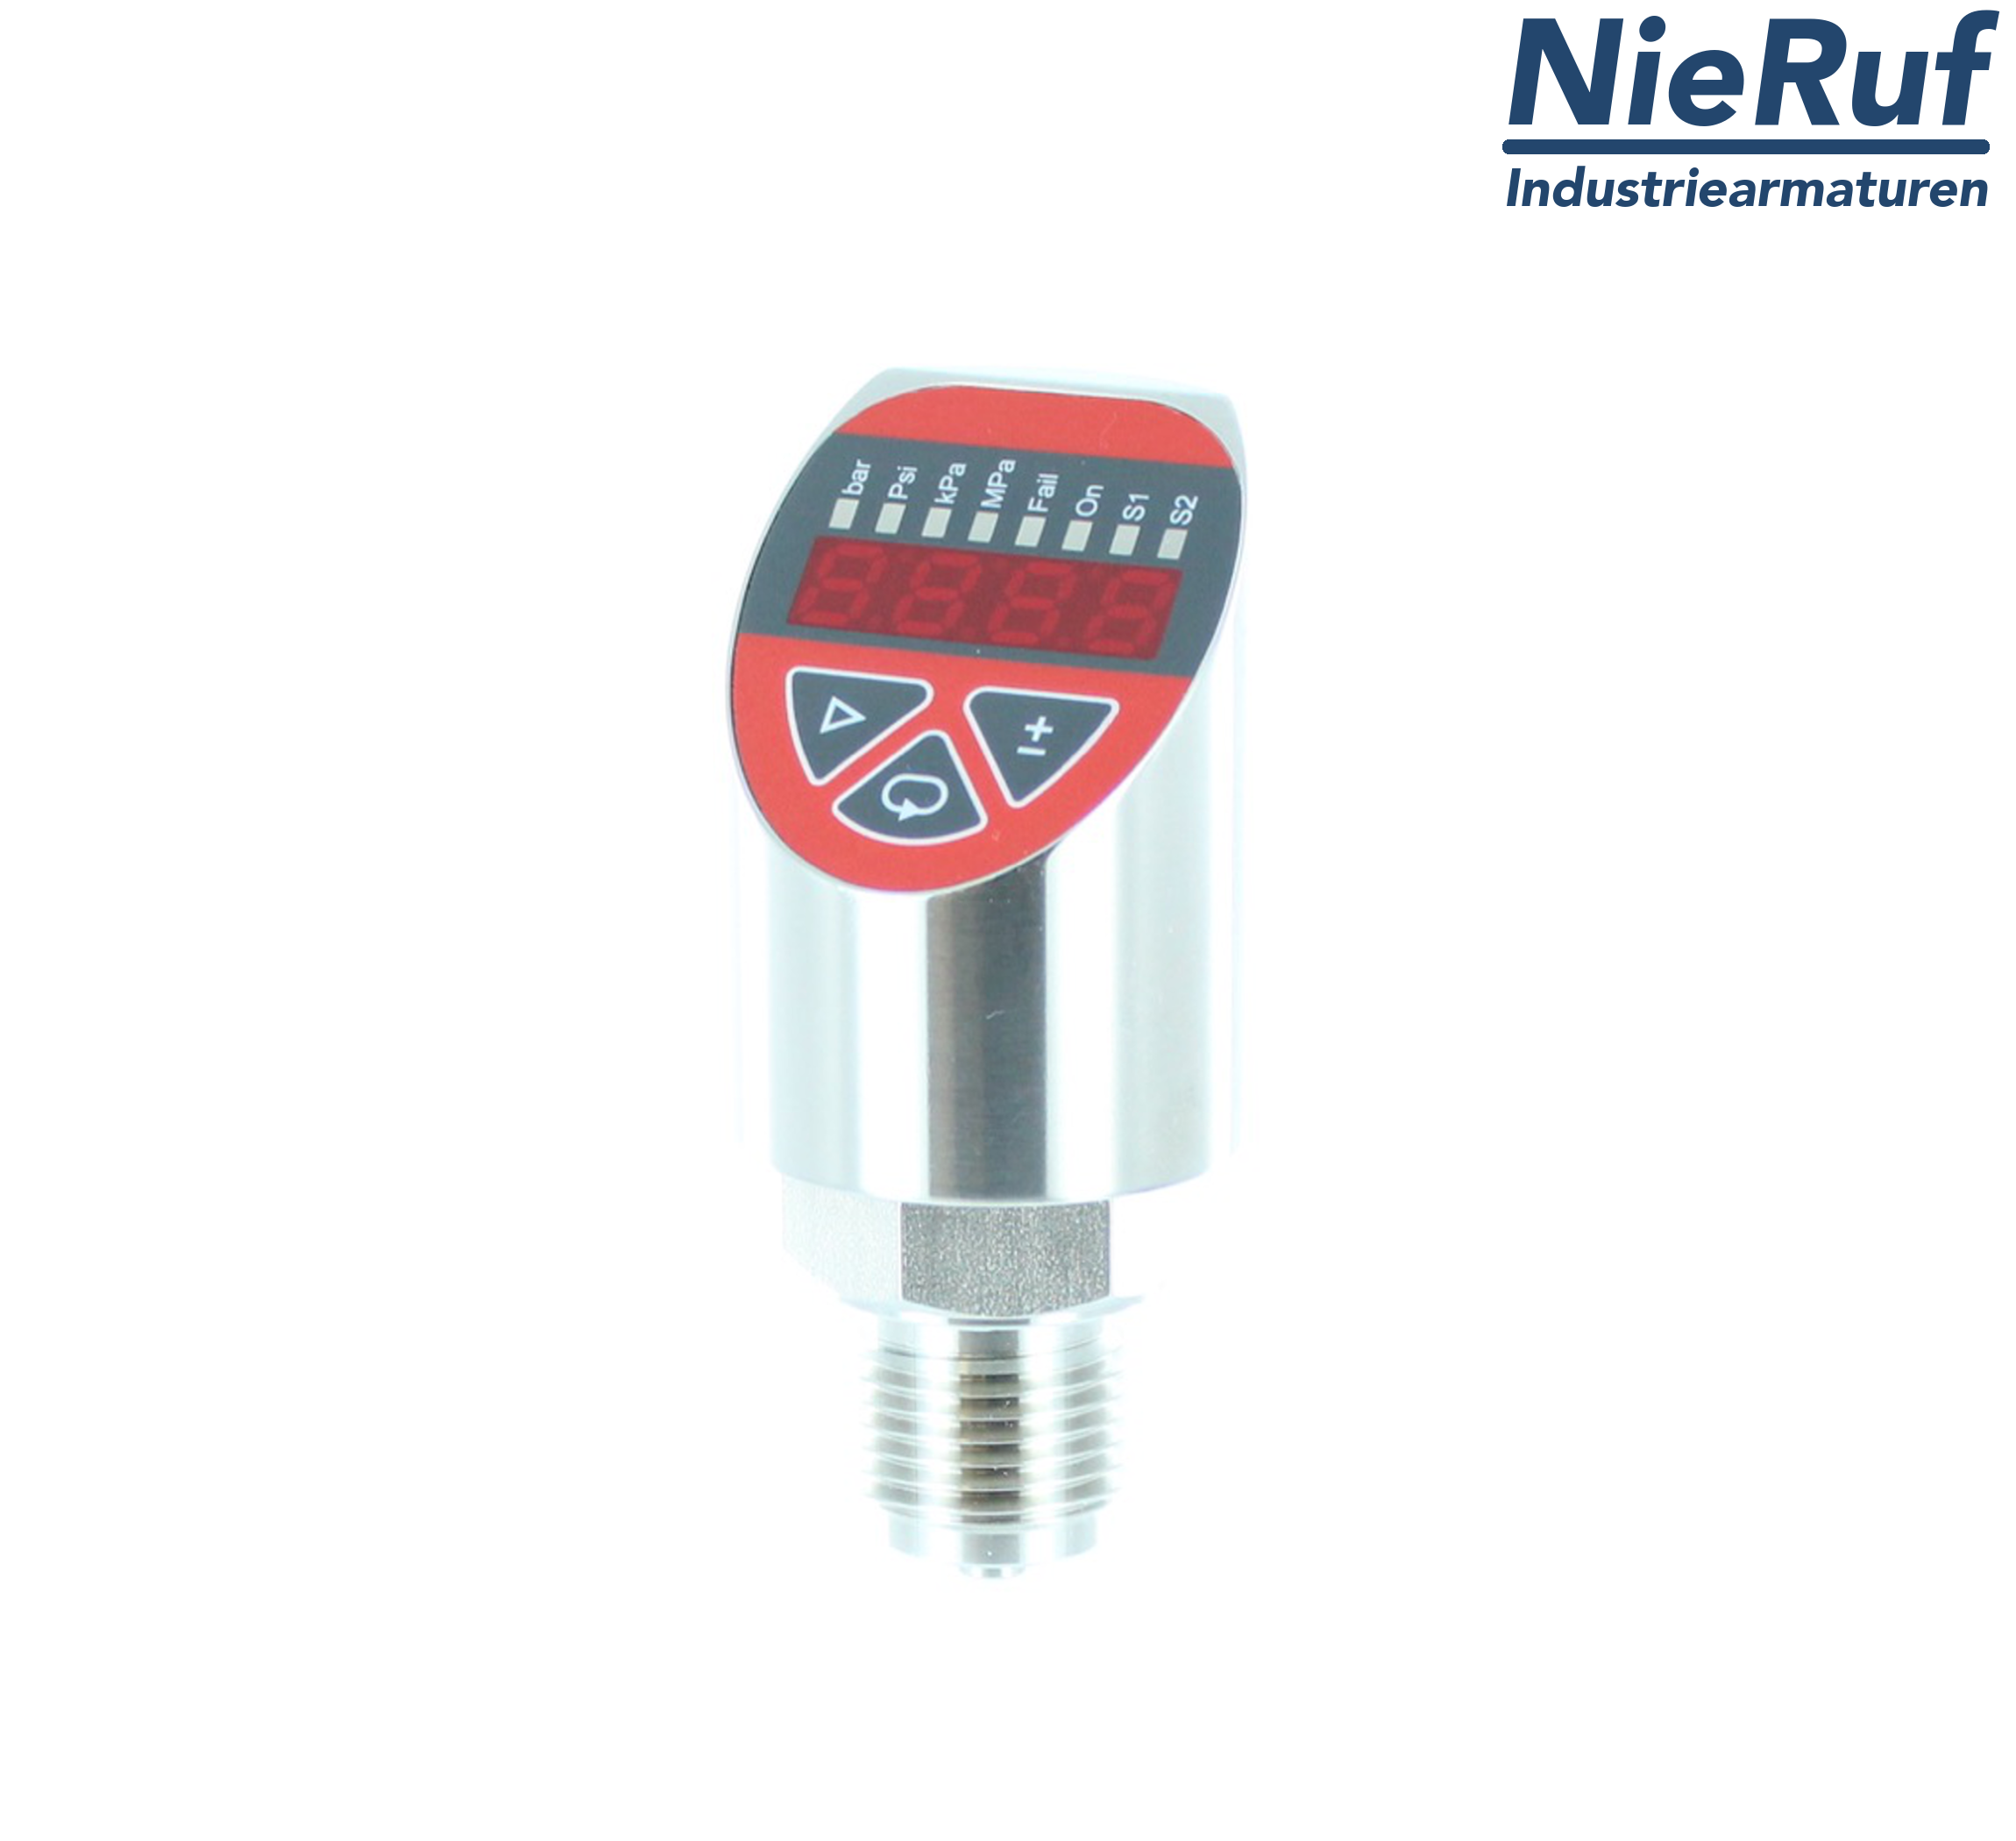 digital pressure sensor G 1/2" B IB 4-wire: 1xPNP, 1x4 - 20mA, Desina FPM 0,0 - 16,0 bar